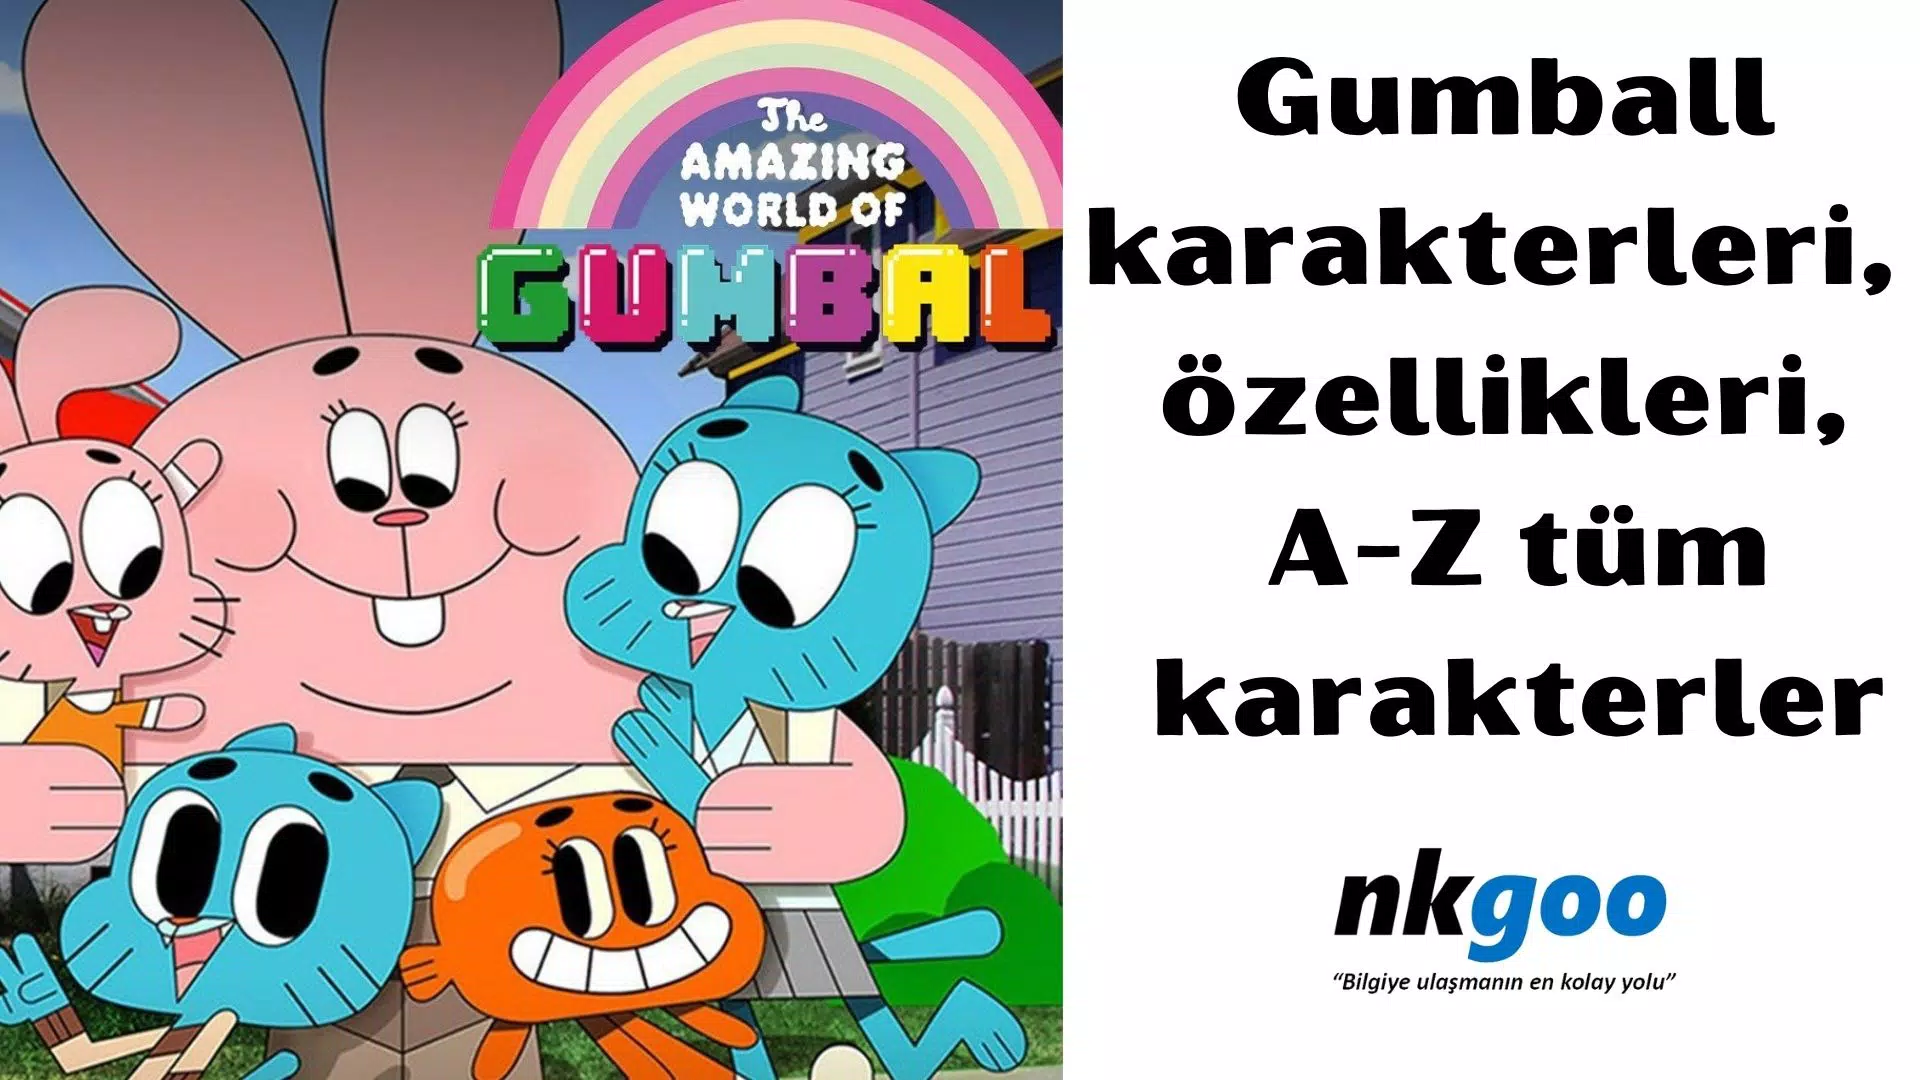 Gumball karakterleri, ana karakterler, A-Z 259 ad.